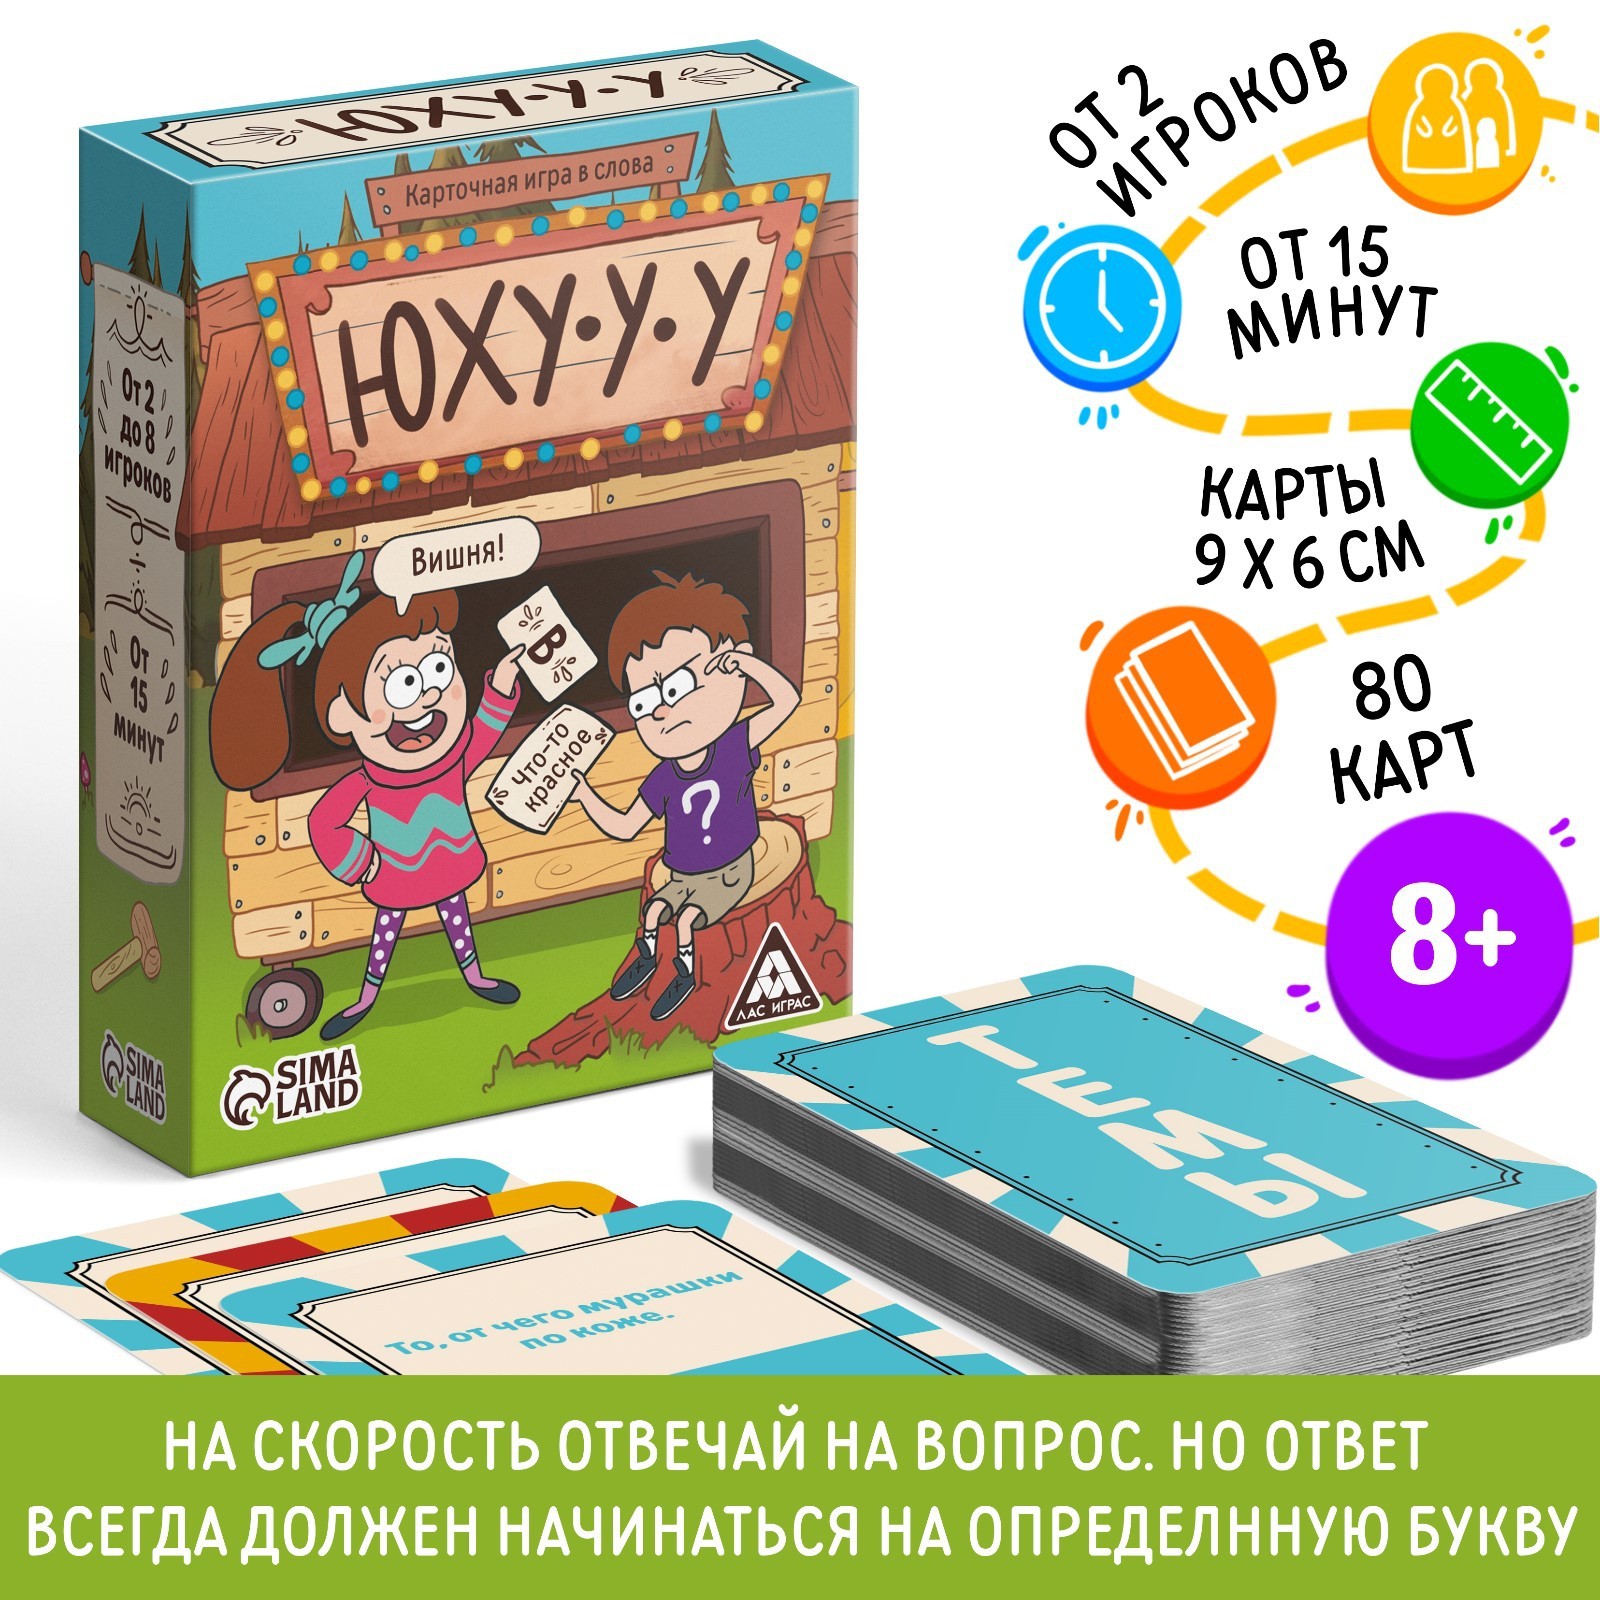 Лас Играс Карточная игра в слова - купить карточная игра в слова Лас Играс Юхууу, 80 карт, 8+, цены в Москве на Мегамаркет